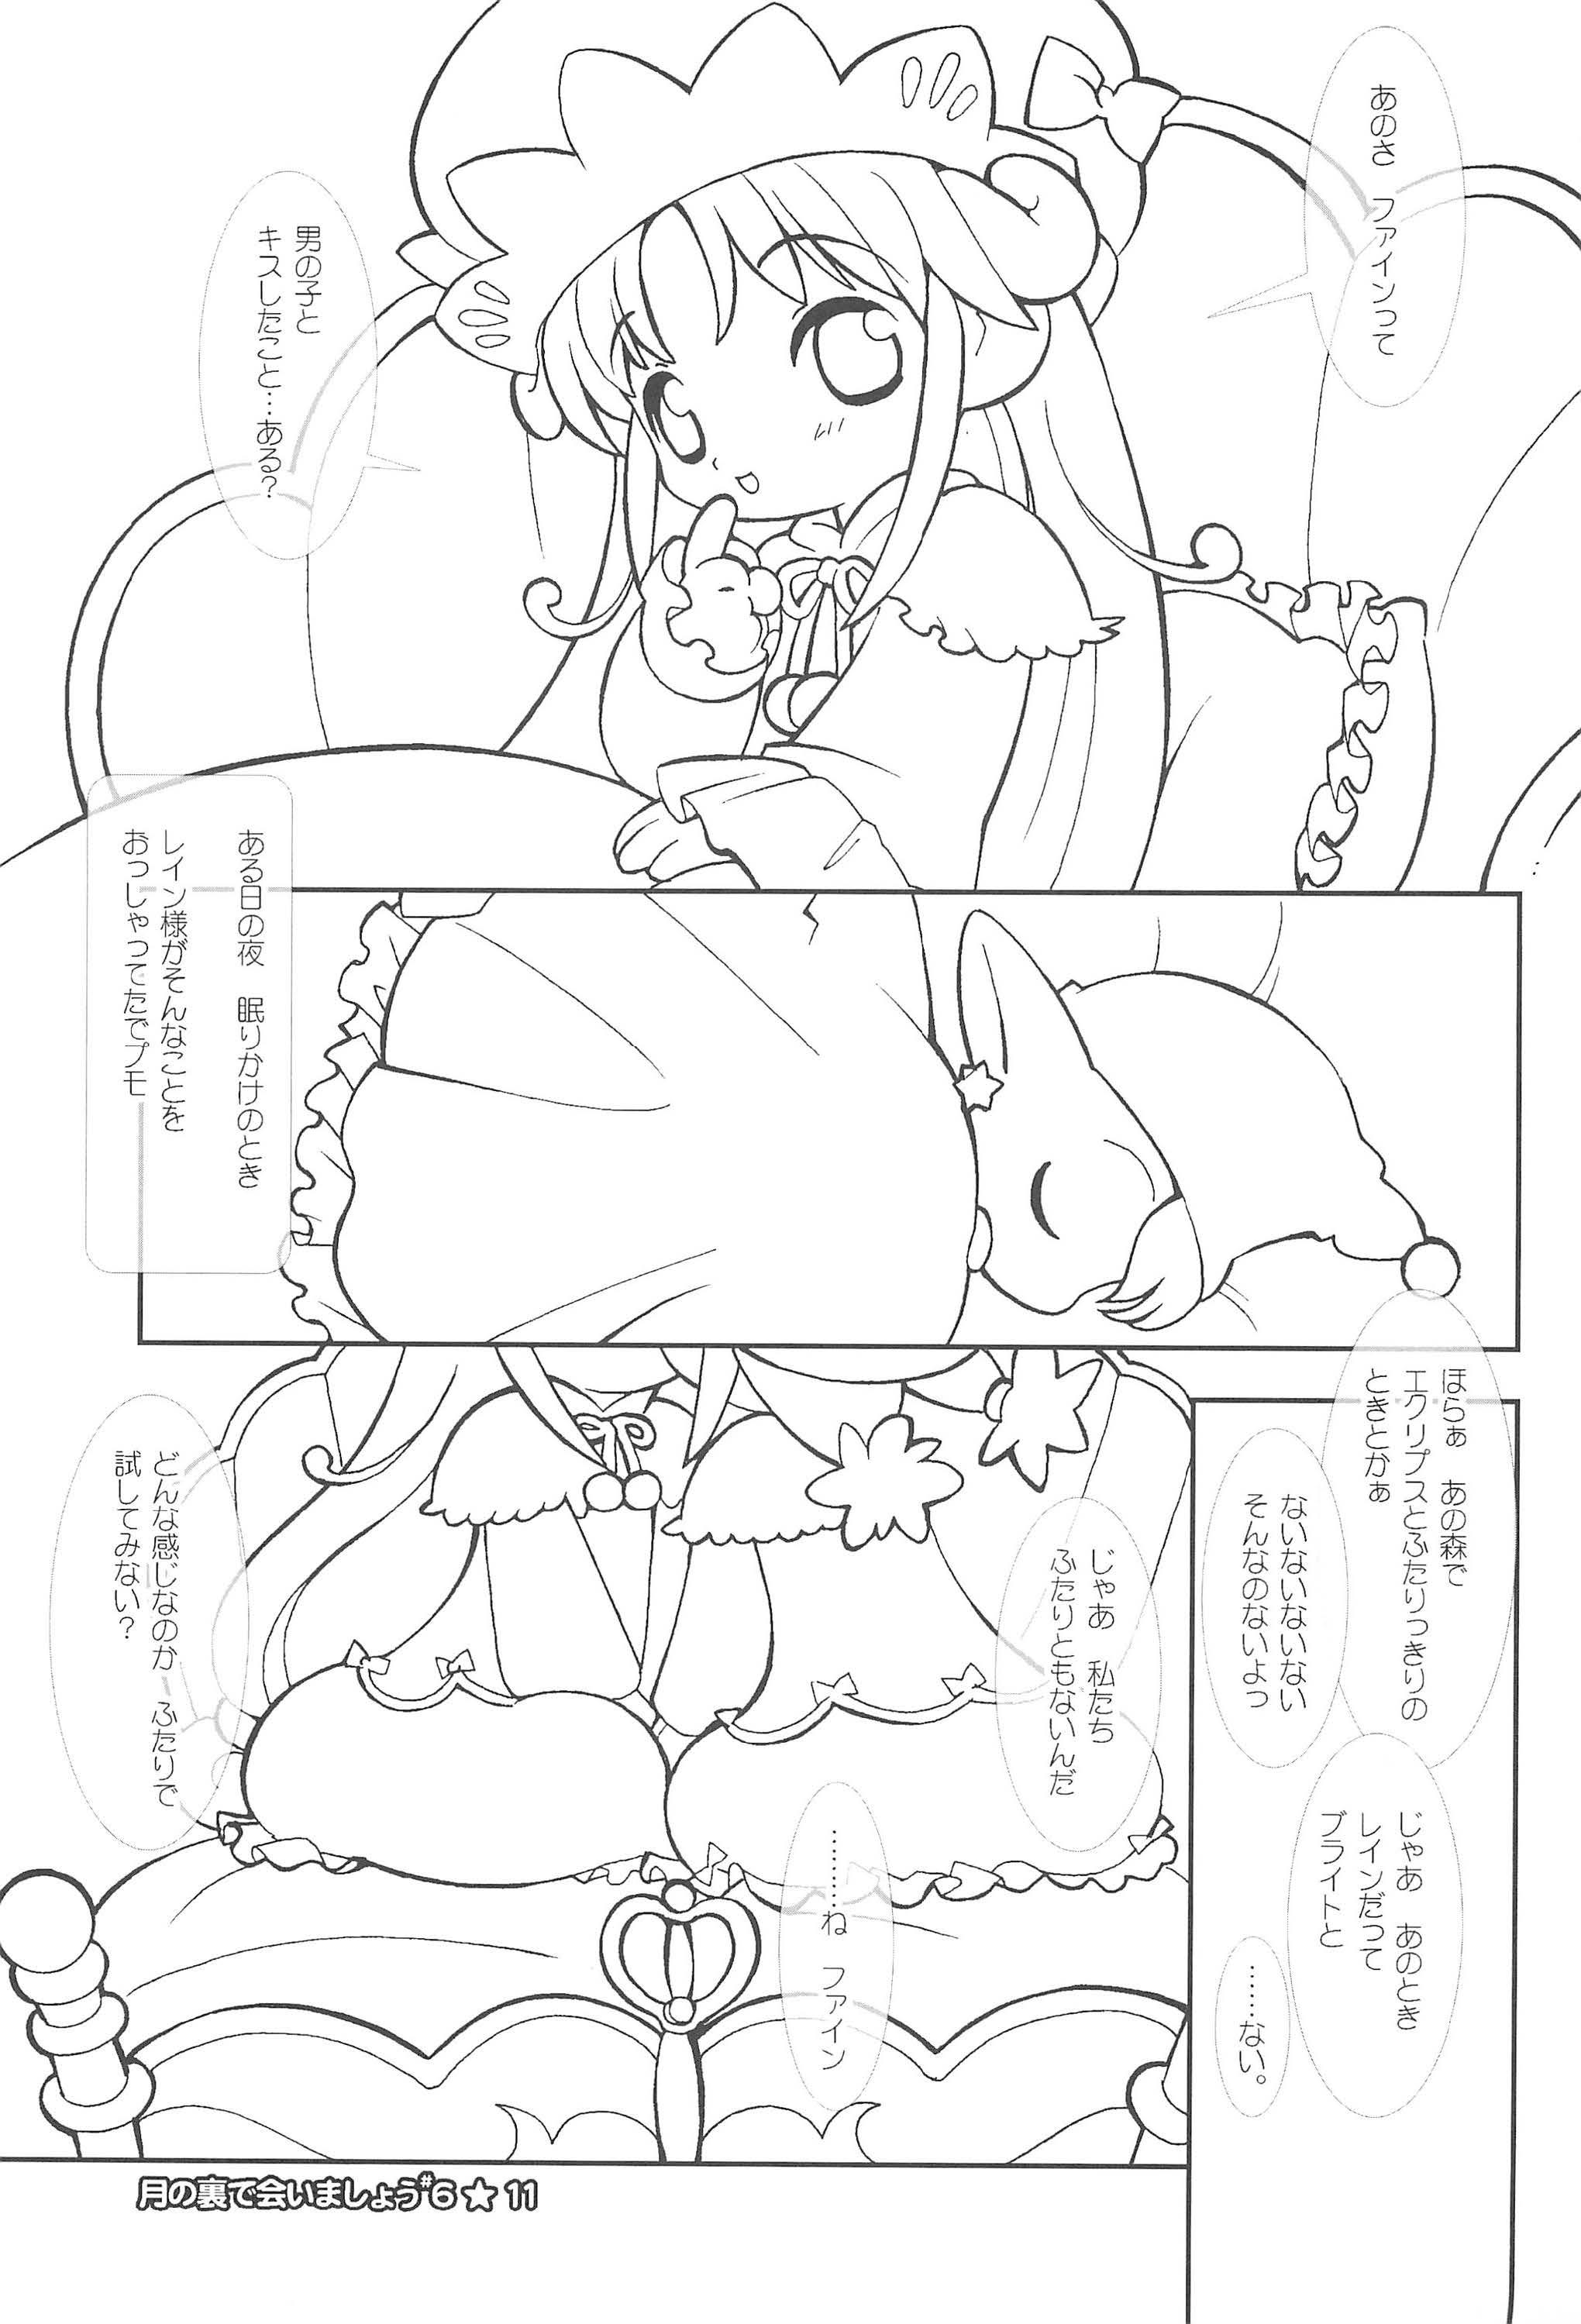 Messy Tsuki no Ura de Aimashou #6 - Let's go to the Darkside of the Moon #6 - Fushigiboshi no futagohime Xxx - Page 11